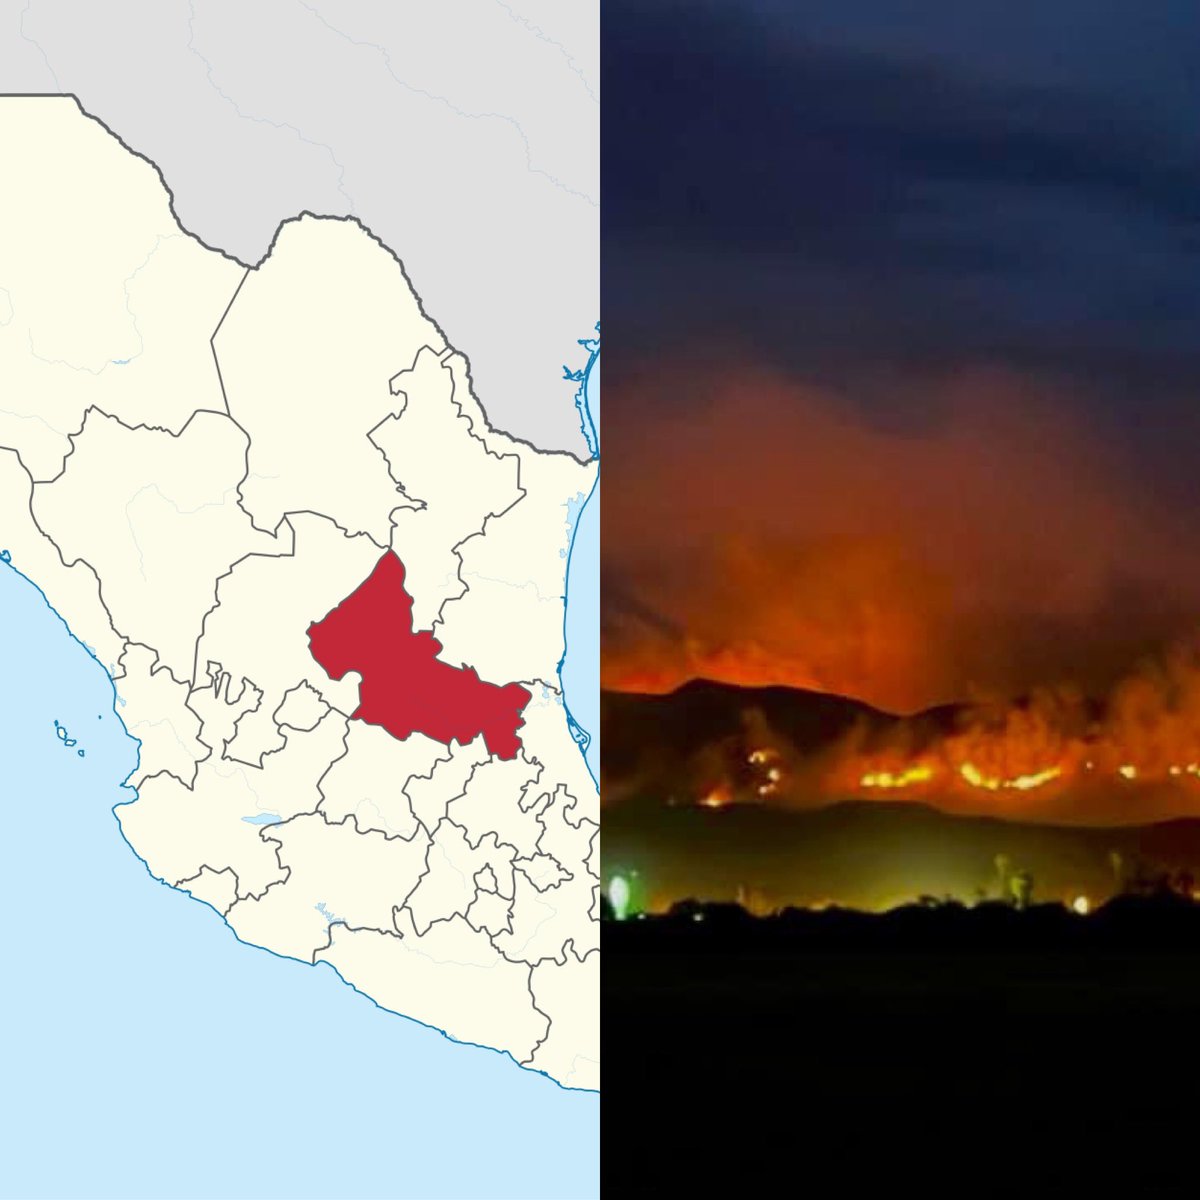 Lamentablemente lo que está pasando en Matehuala, San Luis Potosí, un enorme incendio está arrasando con todo.